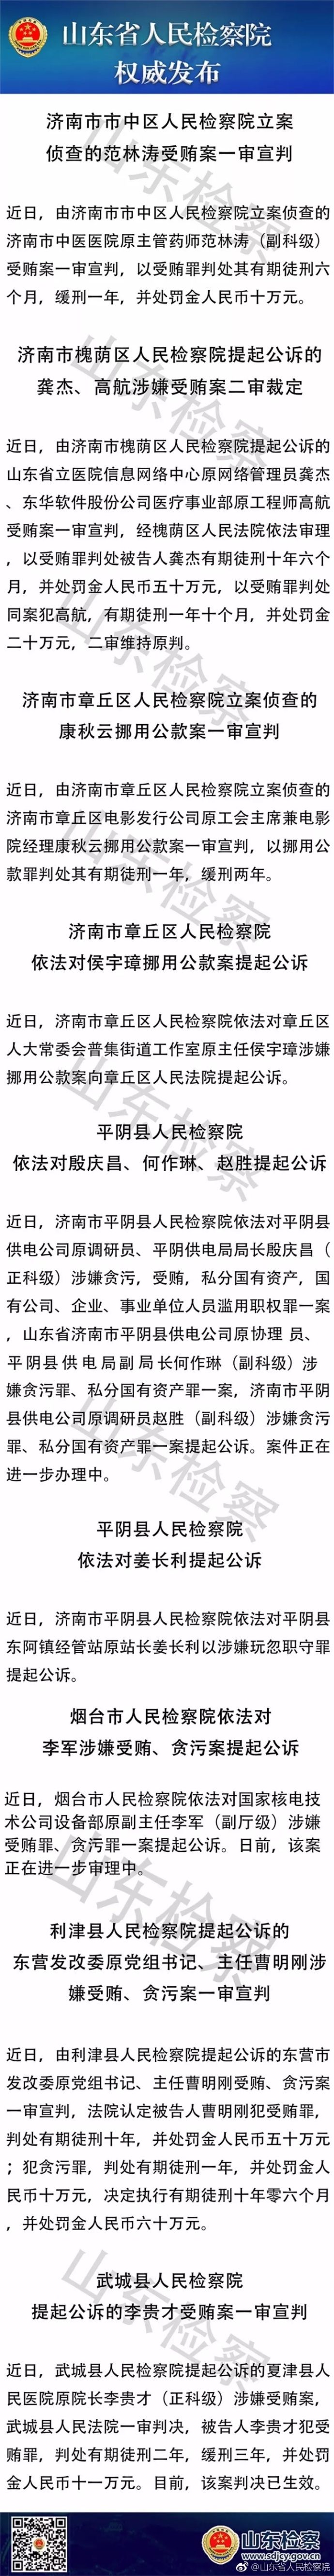 国家核电设备部原副主任李军等12人涉犯罪被追究